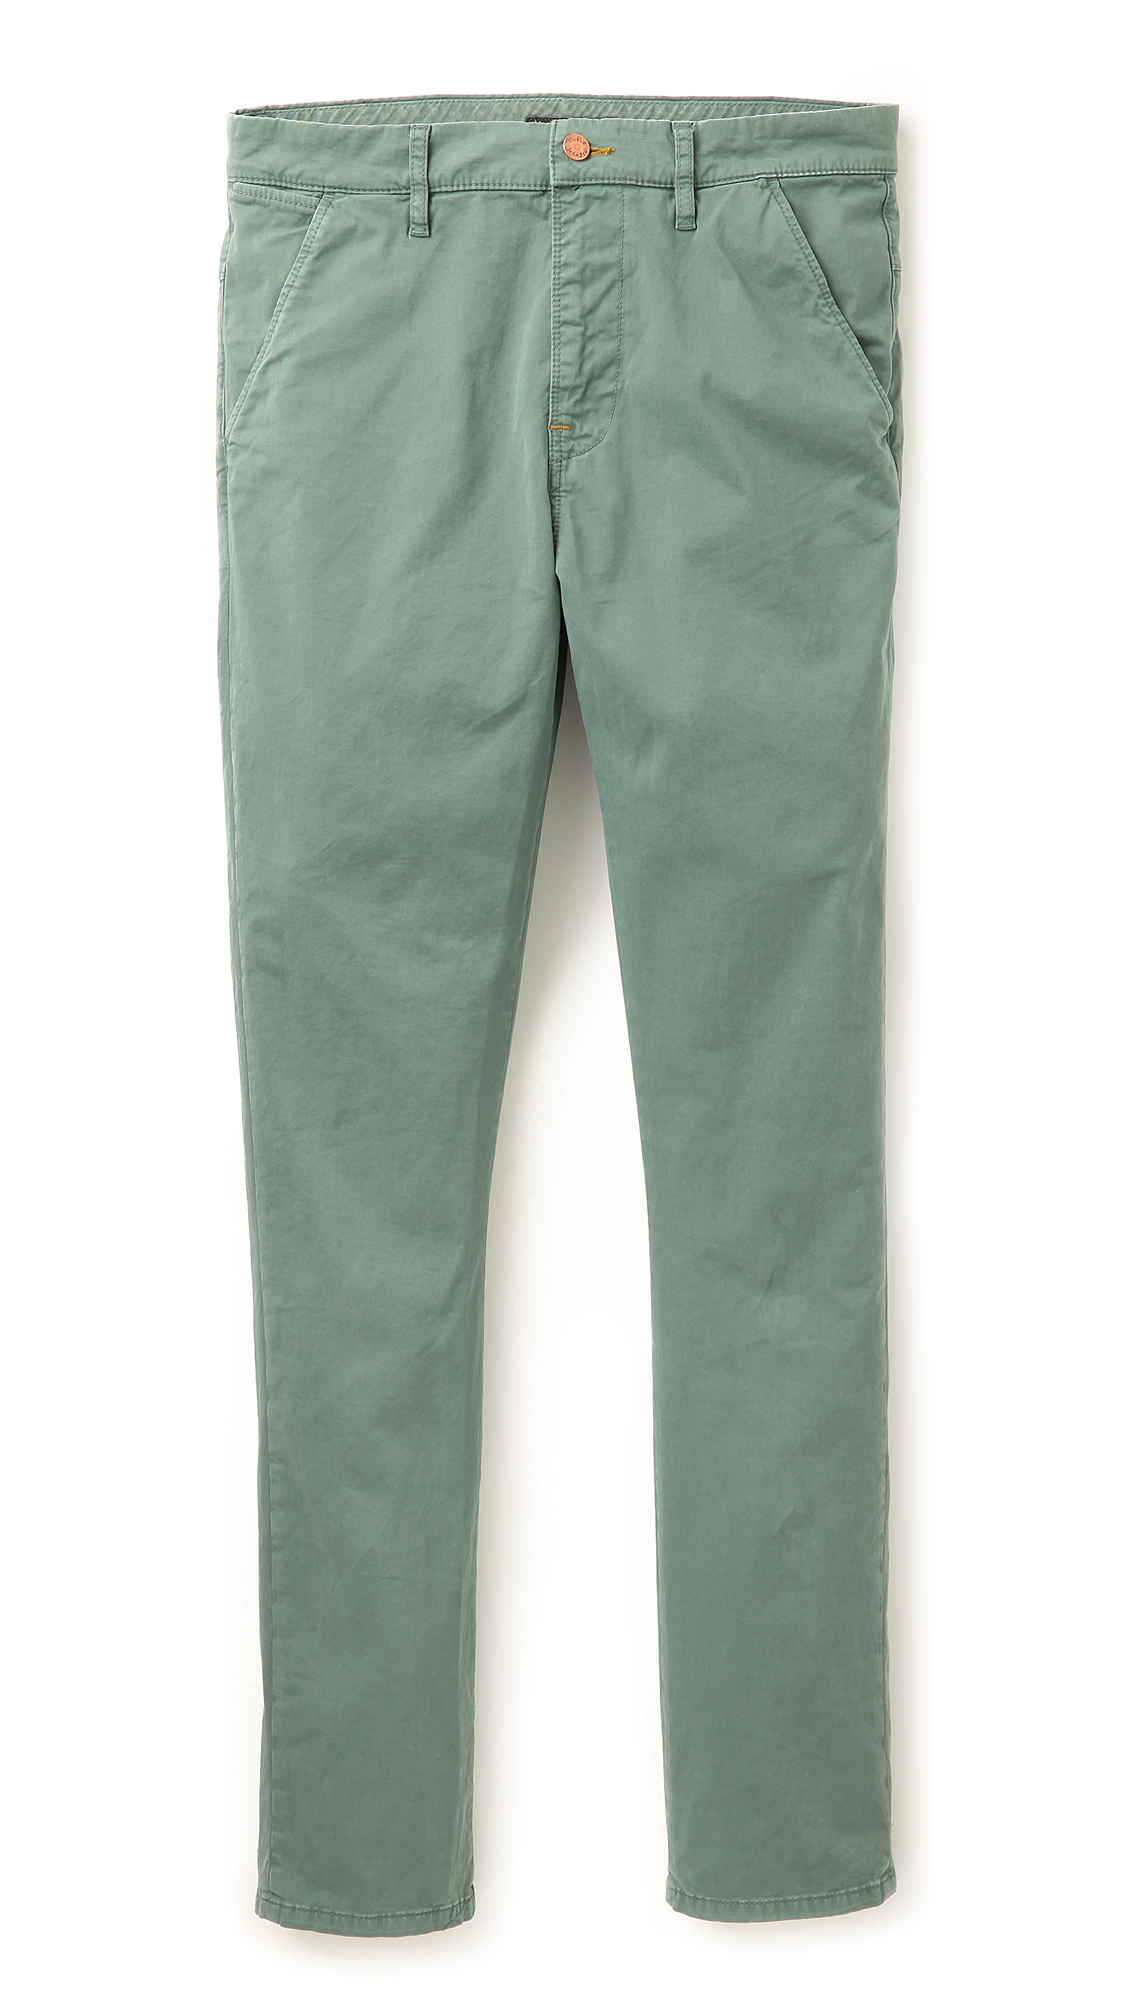 Lyst - Nudie Jeans Slim Fit Khaki Pants in Green for Men